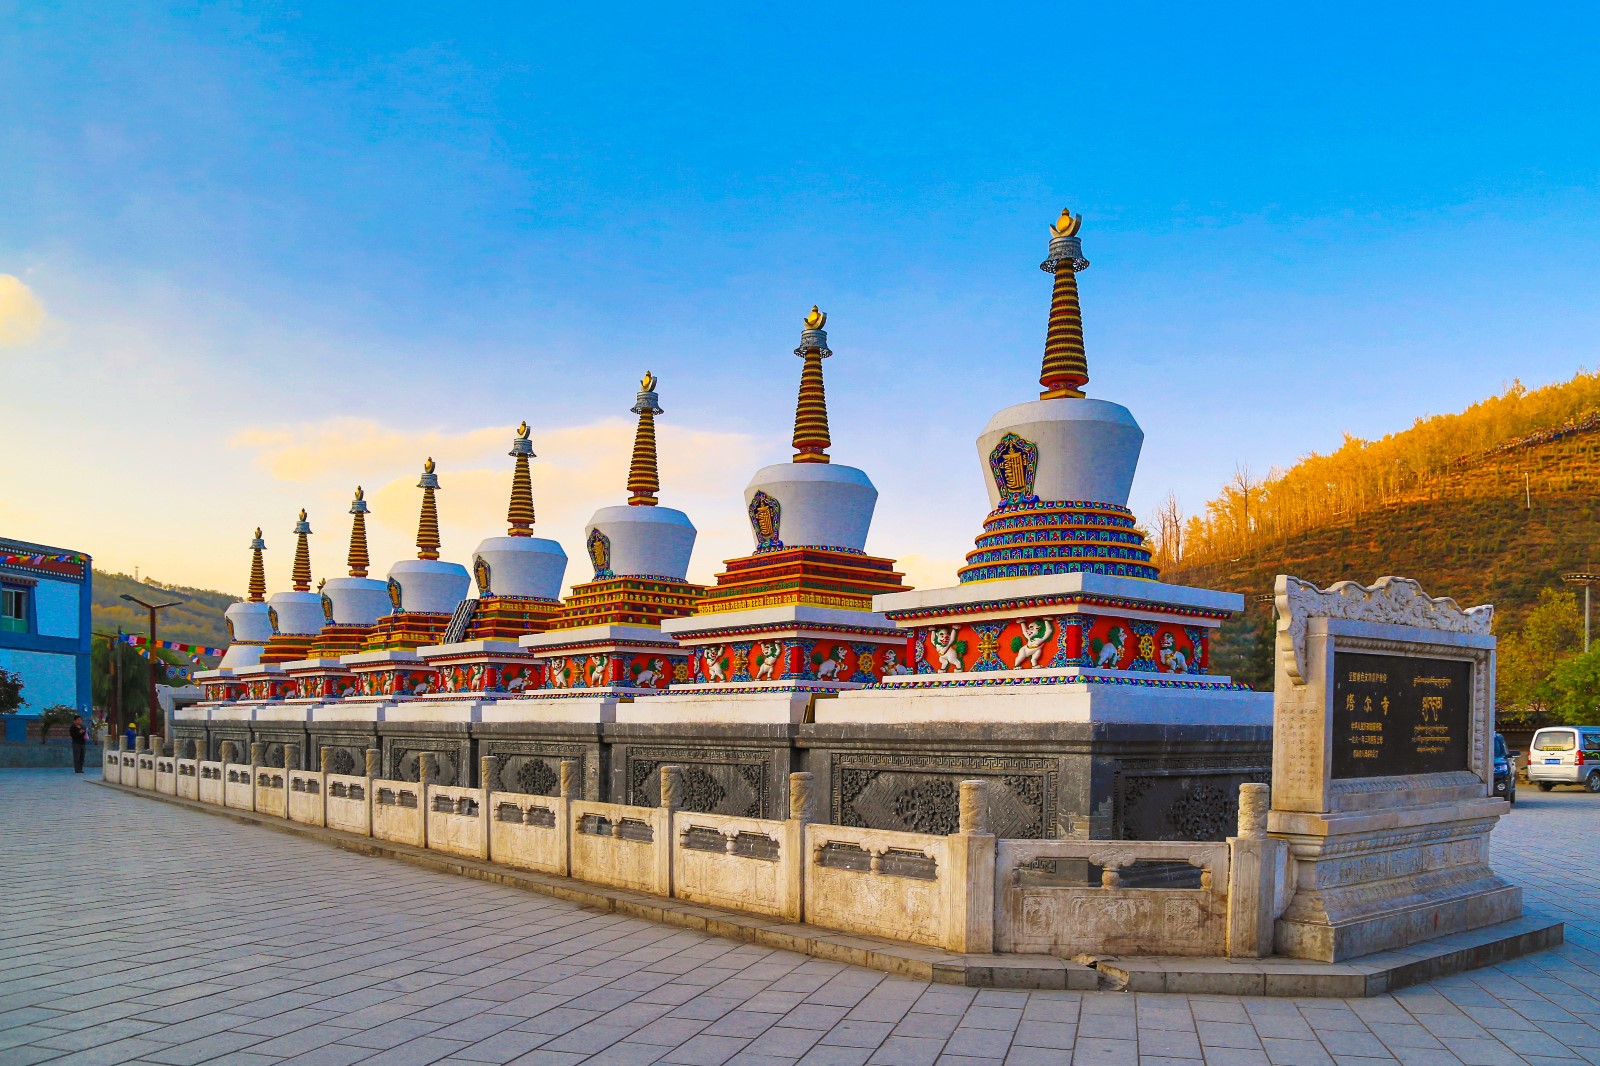 因为历史原因,佛塔寺庙很受尊重,也是来西宁旅游不能错过的必看景点